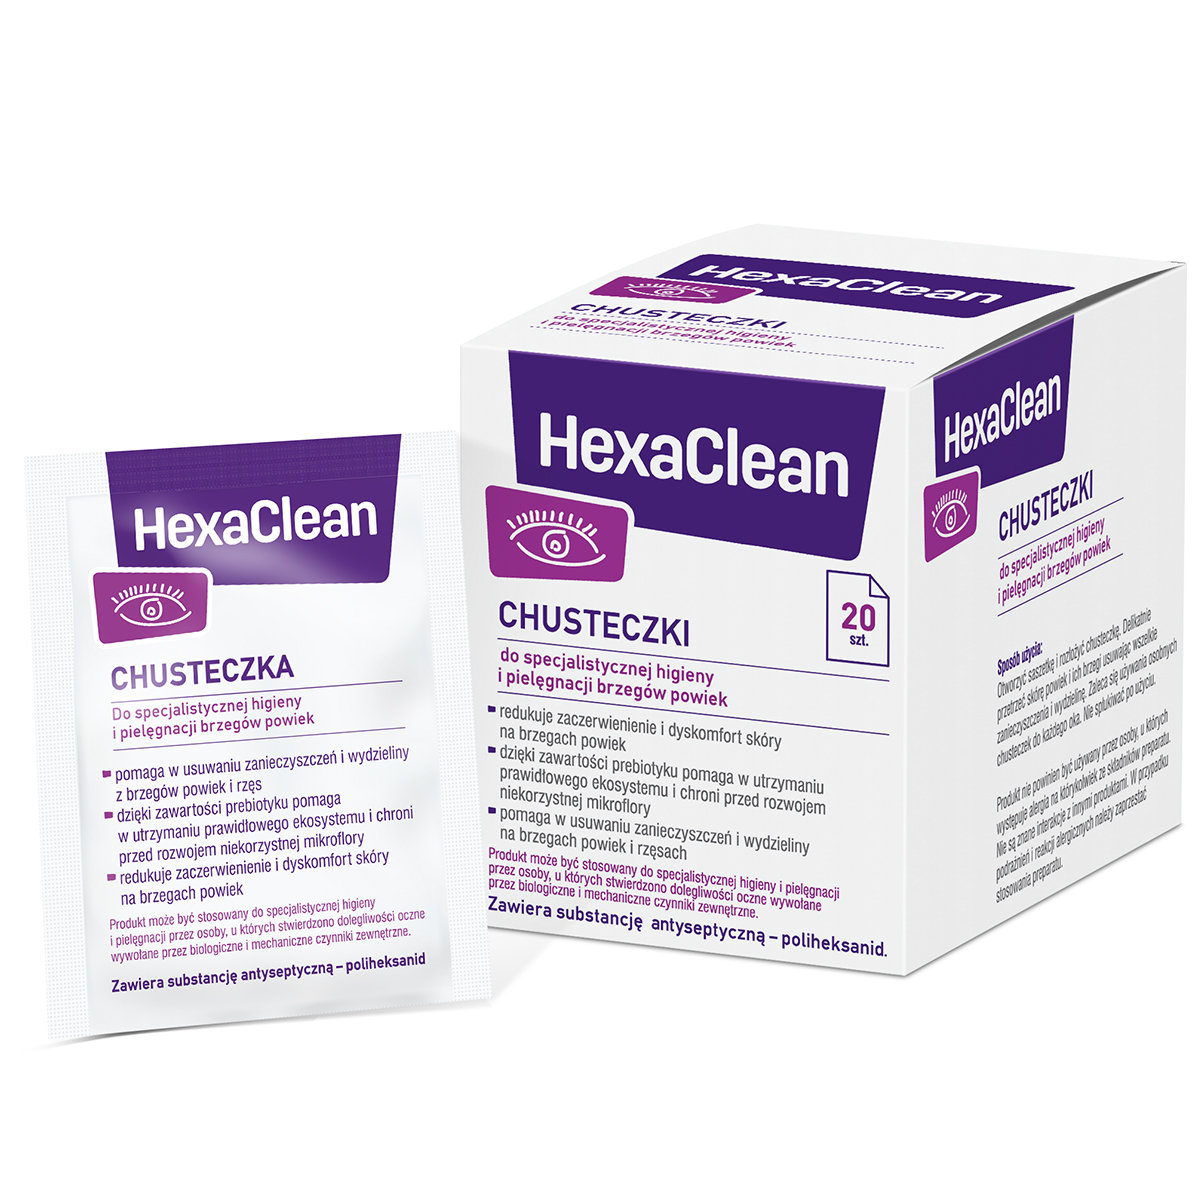 Verco Hexaclean chusteczki do specjalistycznej higieny i pielęgnacji brzegów powiek x 20 szt